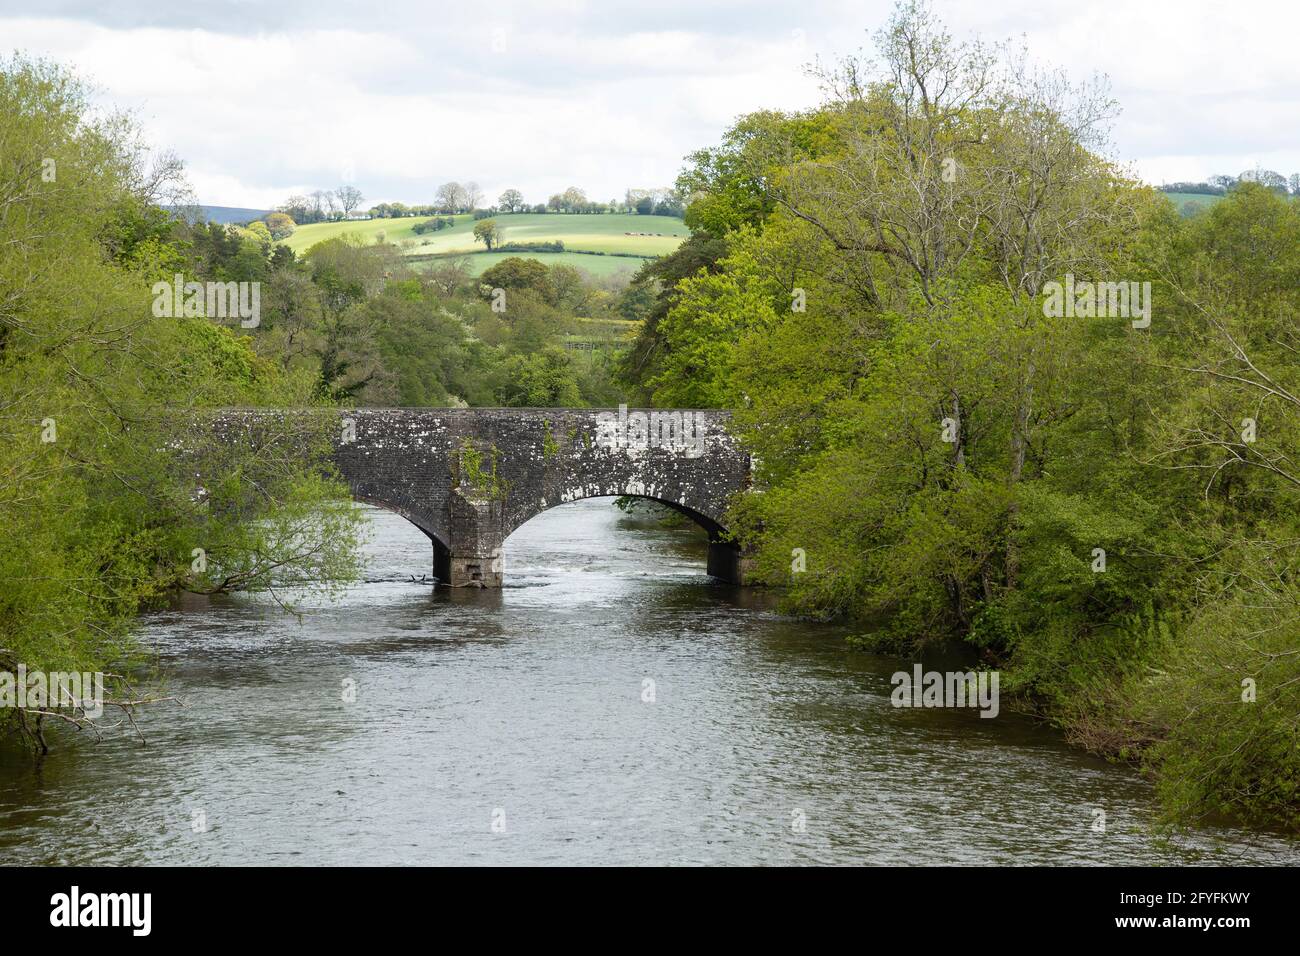 Pont portant la route B4558 au-dessus de la rivière Usk, près de Brynich, Powys, pays de Galles, Royaume-Uni Banque D'Images